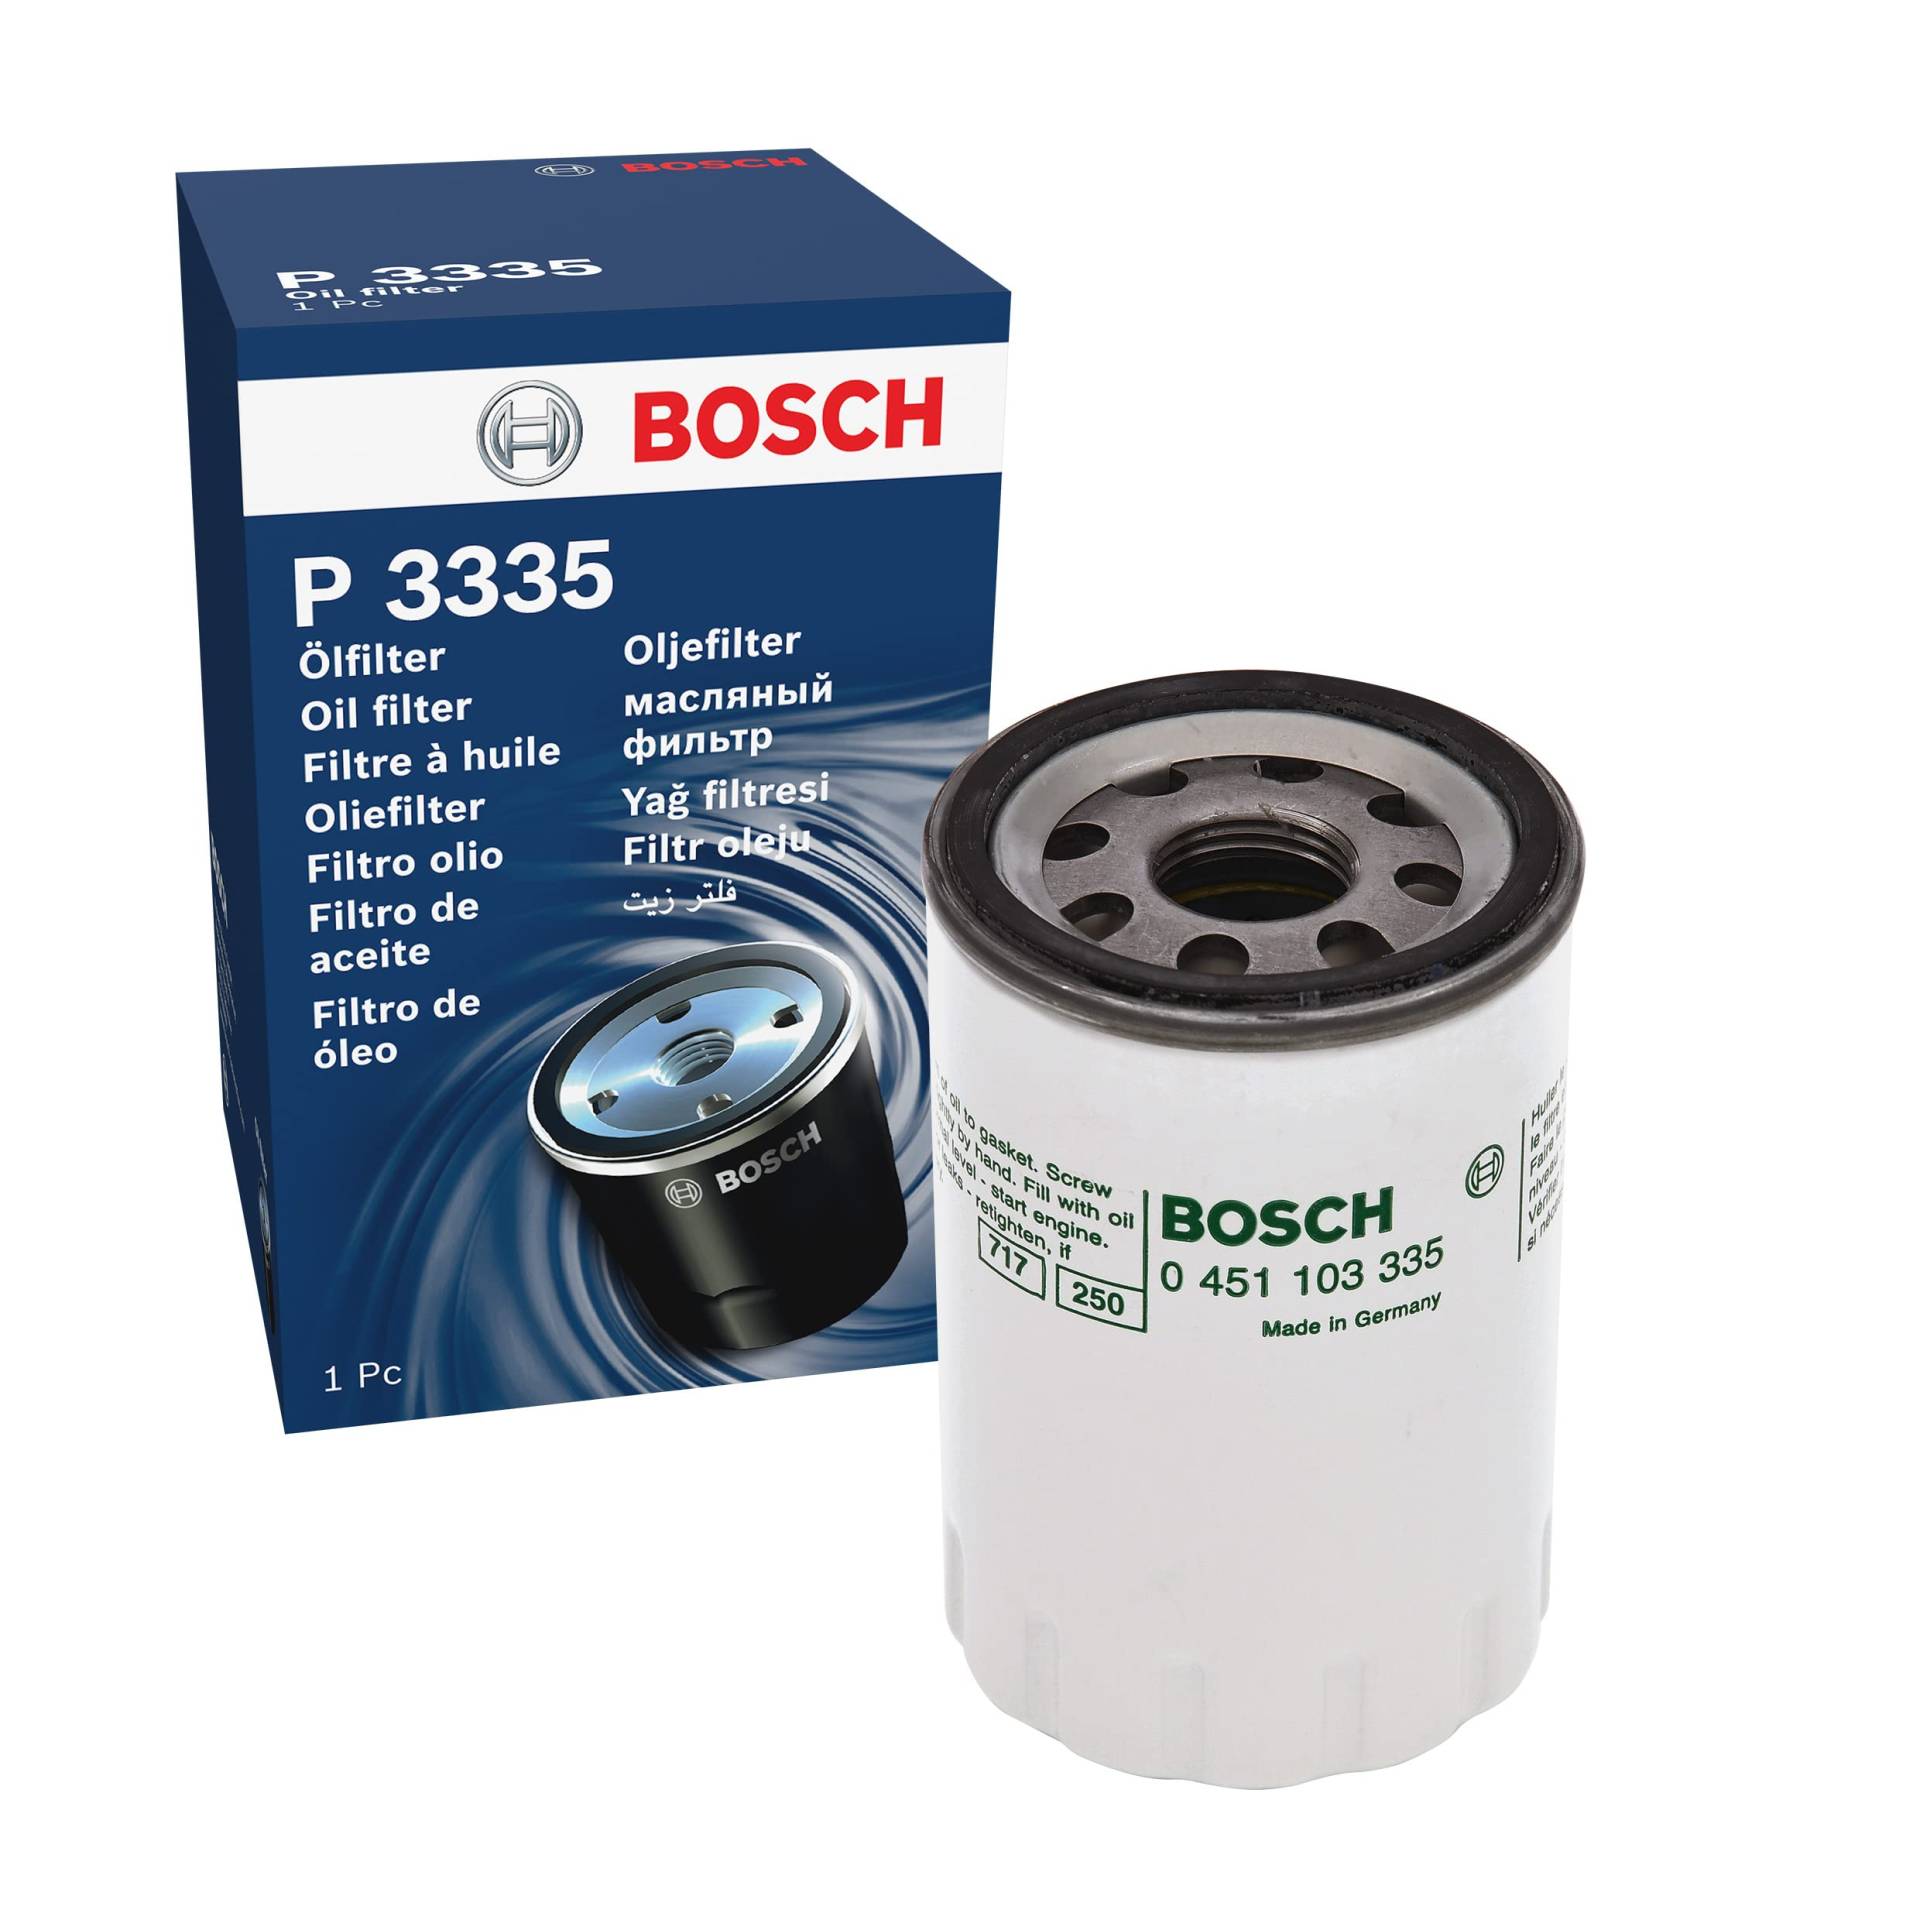 Bosch P3335 - Ölfilter Auto von Bosch Automotive